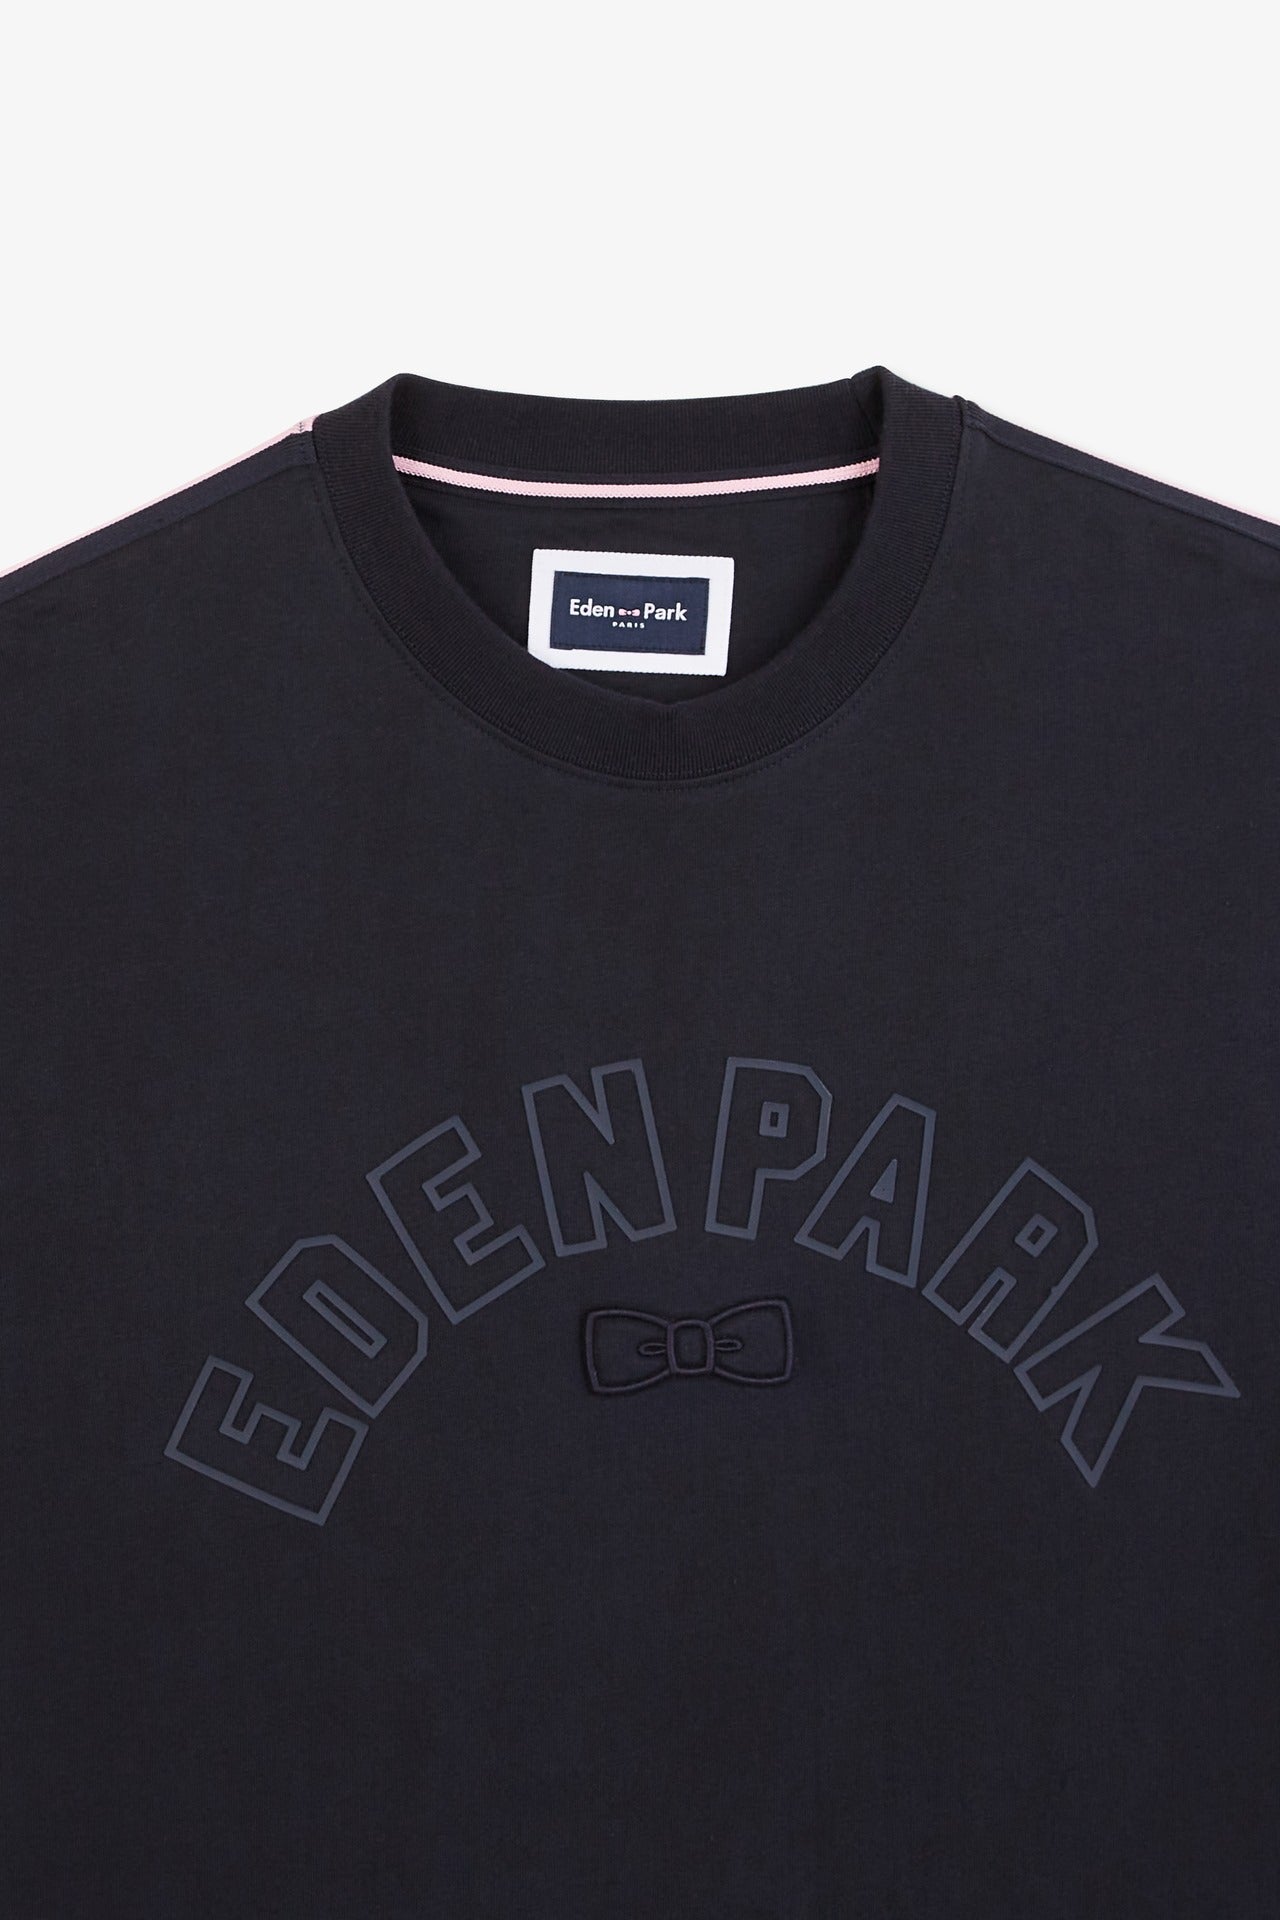 T-shirt bleu foncé à inscription Eden Park